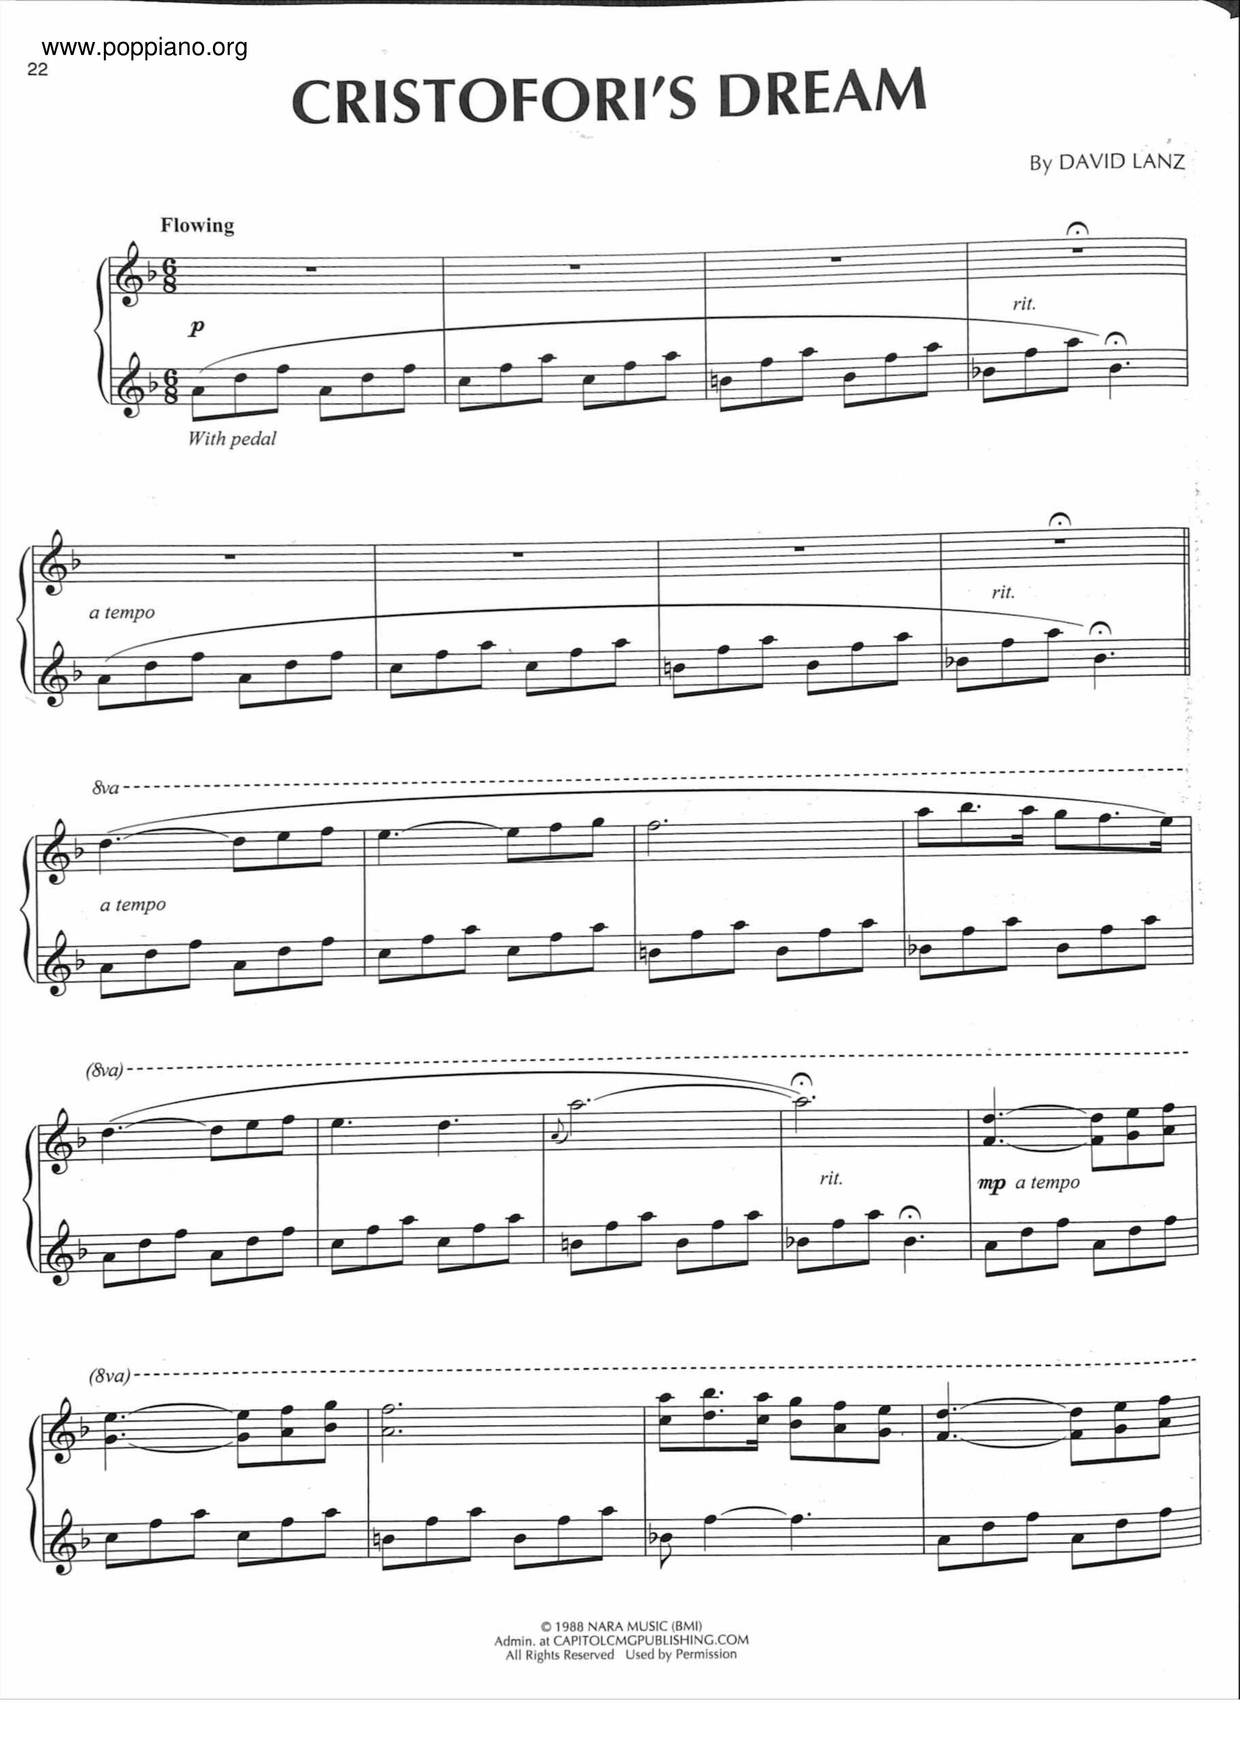 Cristofori's Dream Score